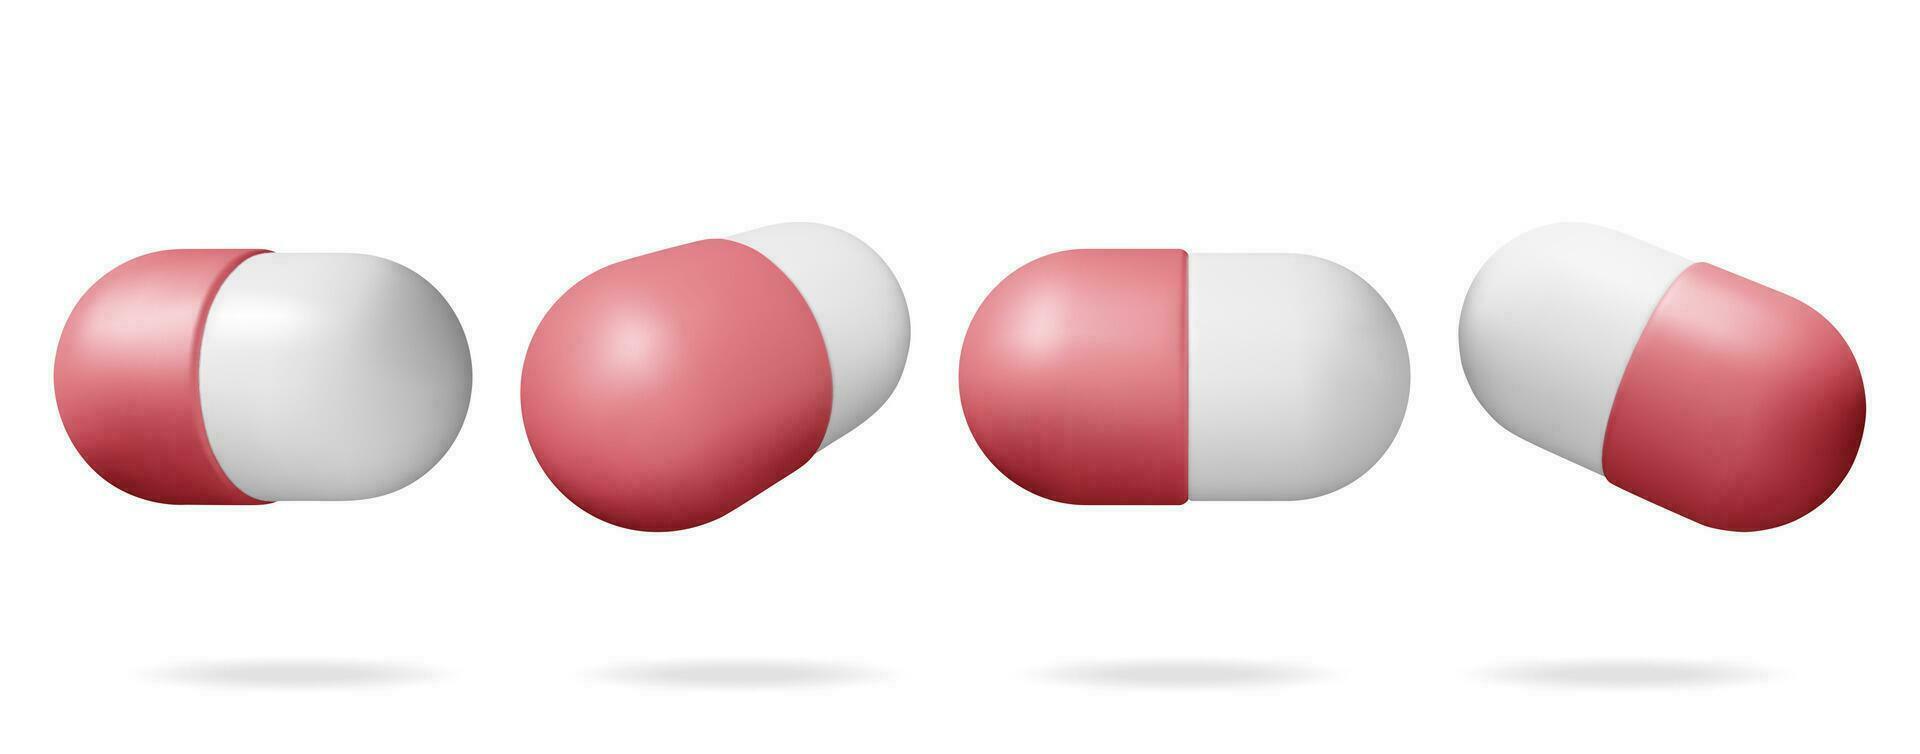 3d classique capsule pilules de différent angles collection. rendre capsule comprimés ensemble. pilule pour maladies et douleur traitement. médical médicament, vitamine, antibiotique. soins de santé pharmacie. vecteur illustration